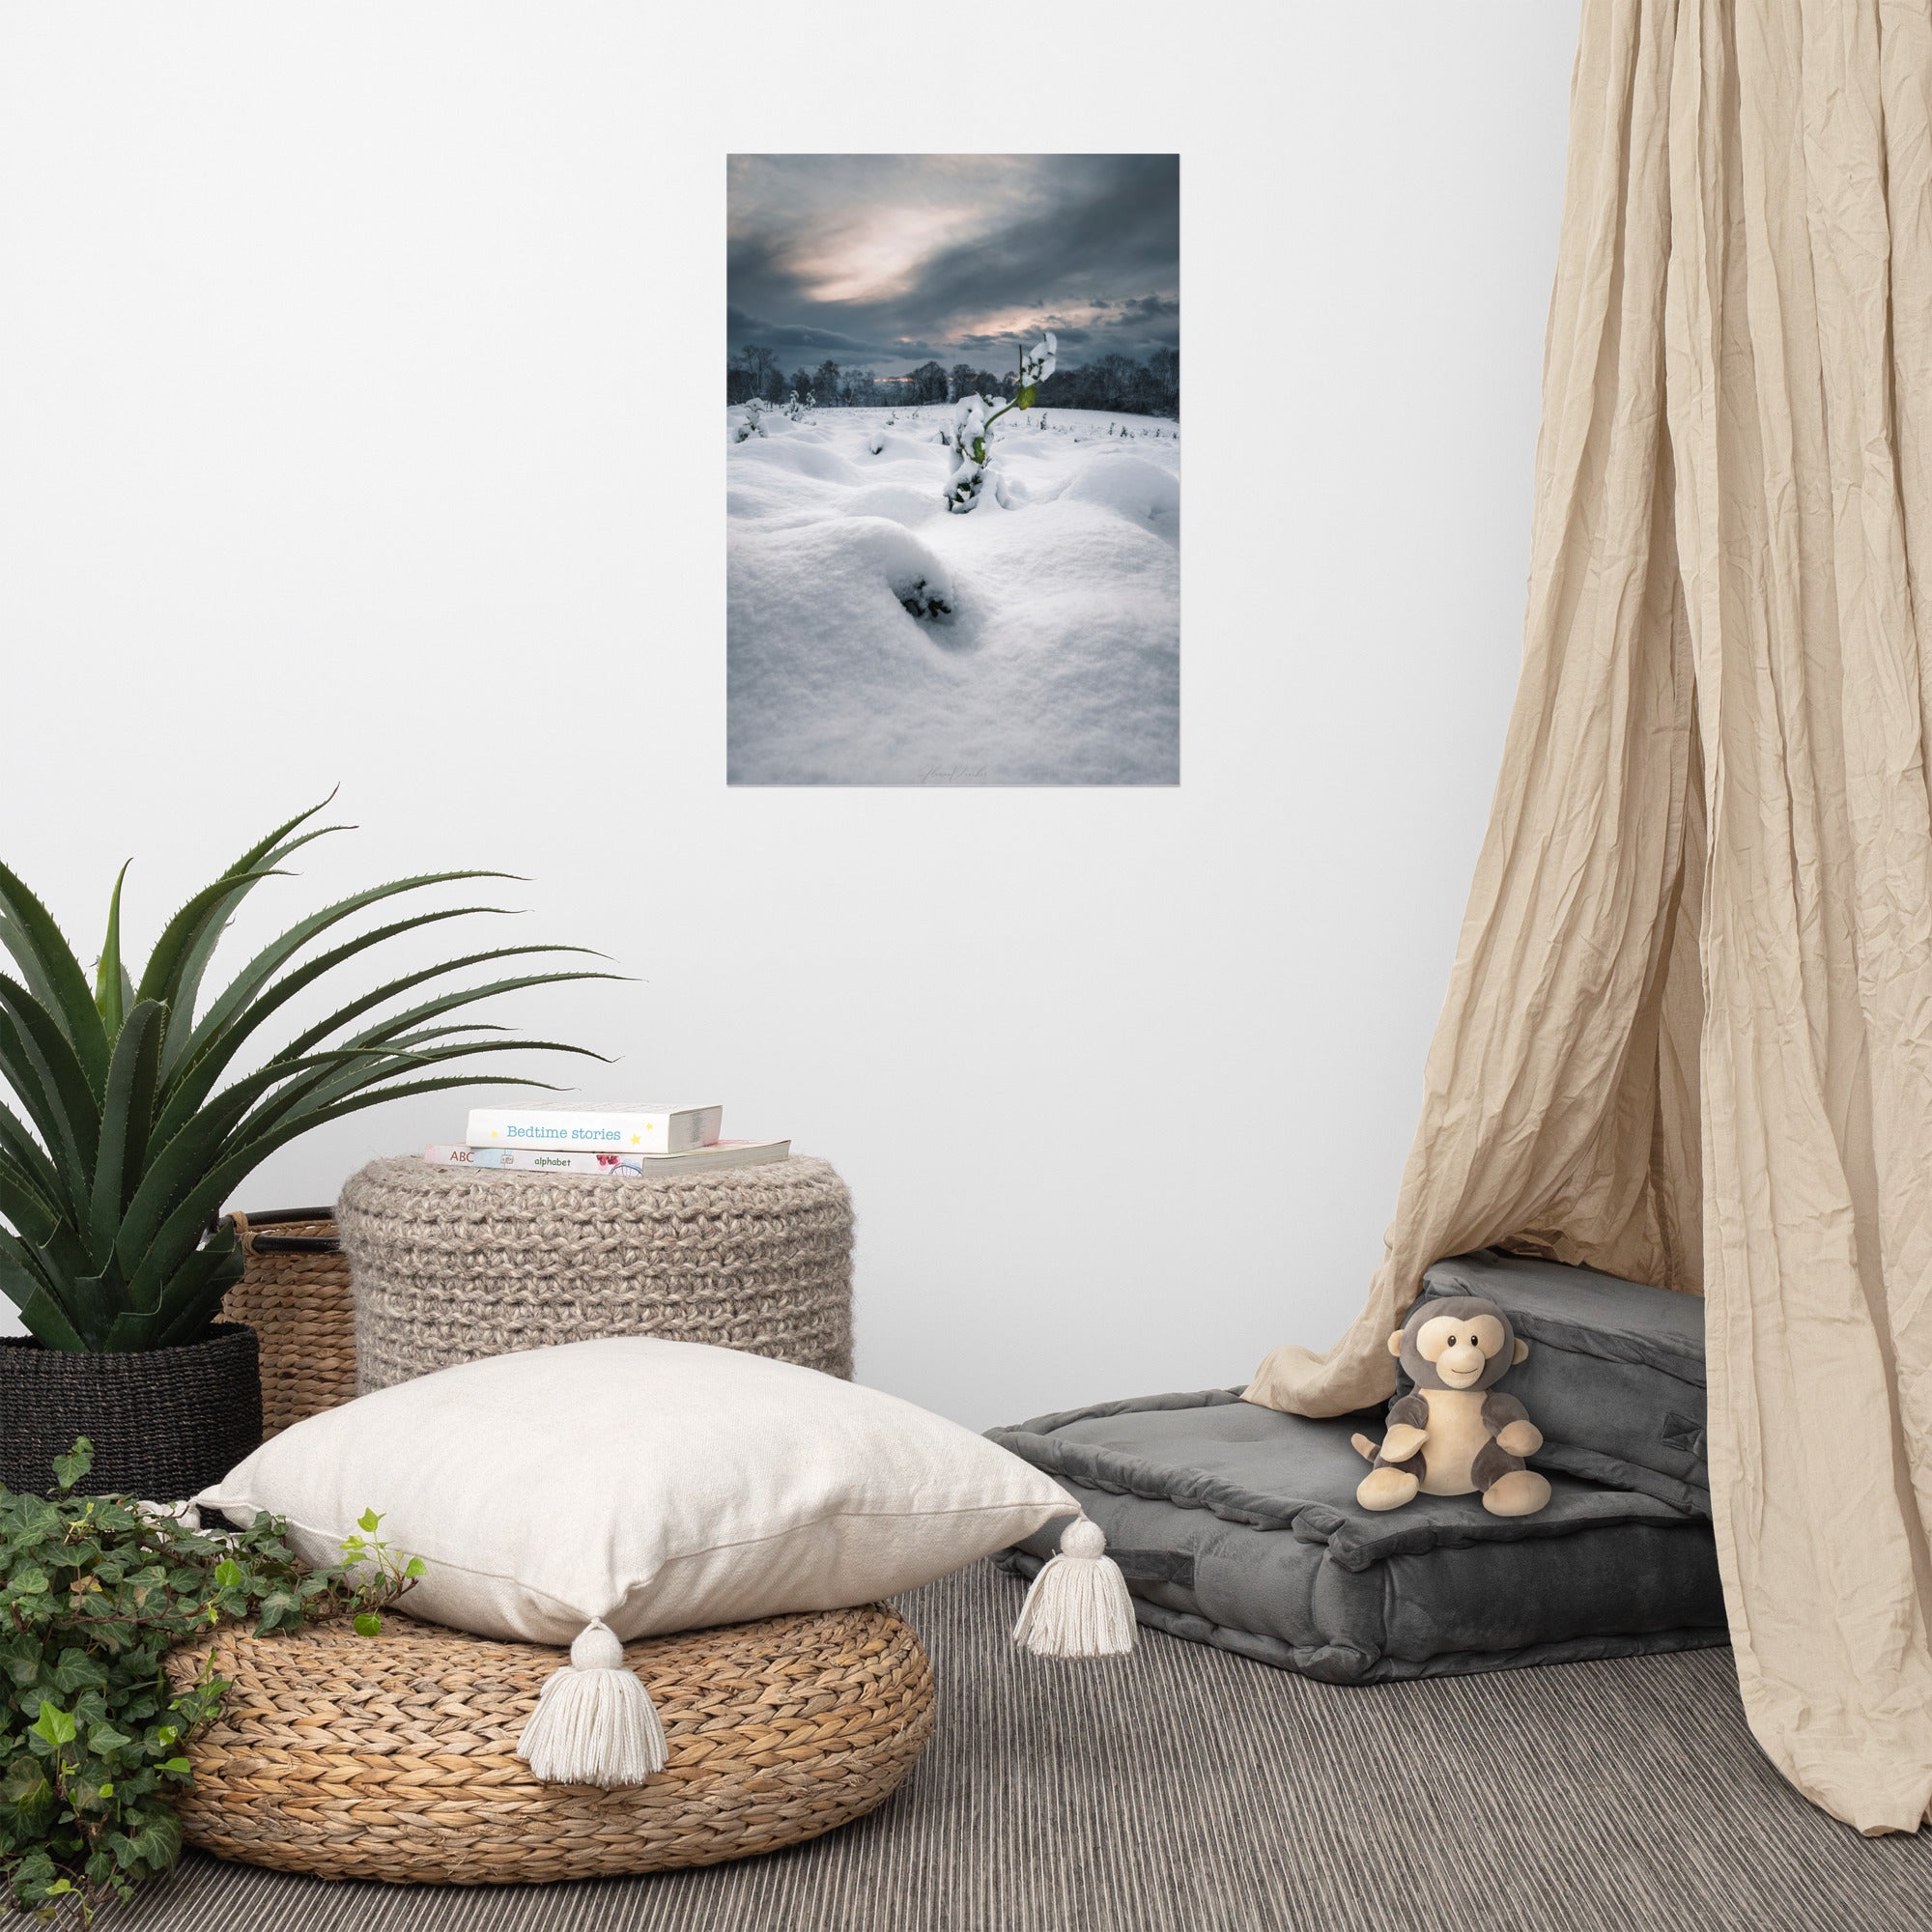 Photographie hivernale captivante montrant une plante verte solitaire au milieu d'un paysage enneigé, avec une forêt lointaine et un ciel nuageux en arrière-plan, œuvre de Florian Vaucher.